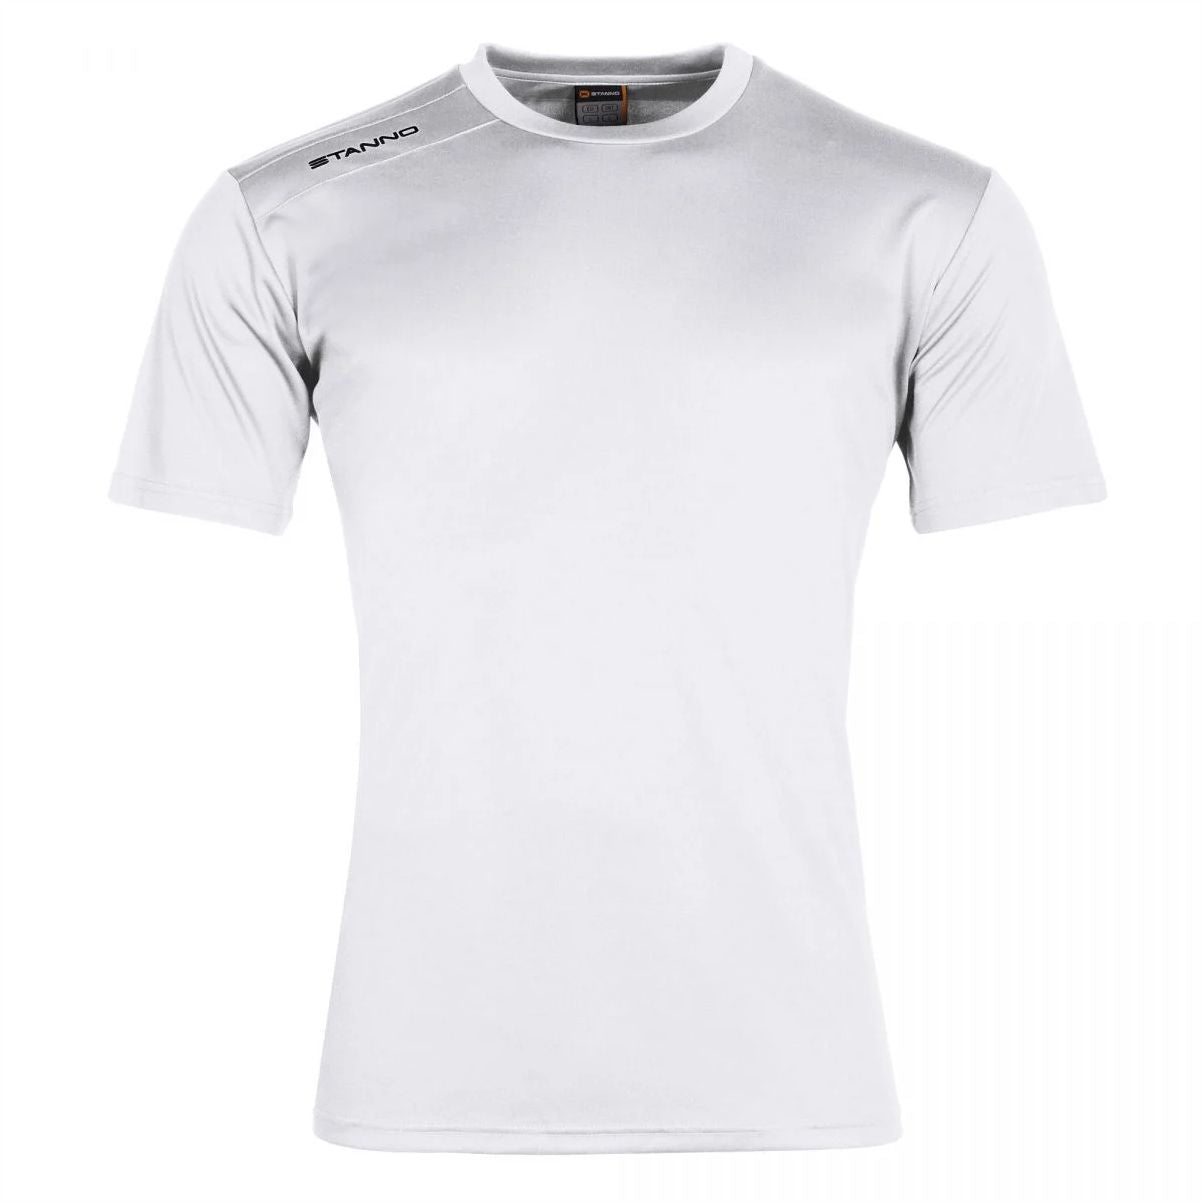 Stanno - Field Shirt -White